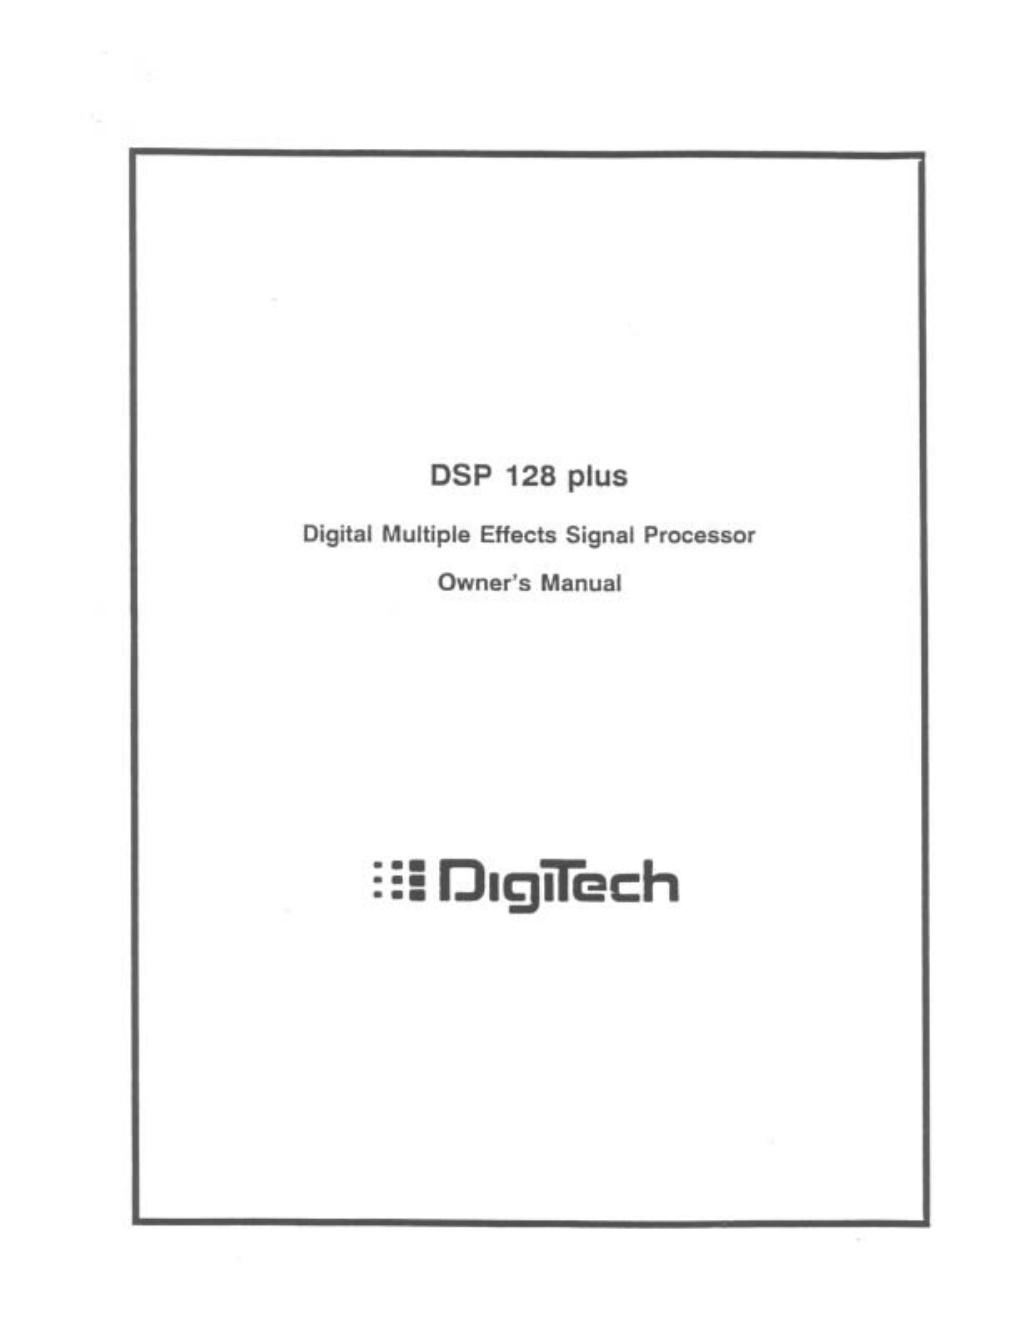 digitech dsp 128 plus owner manual